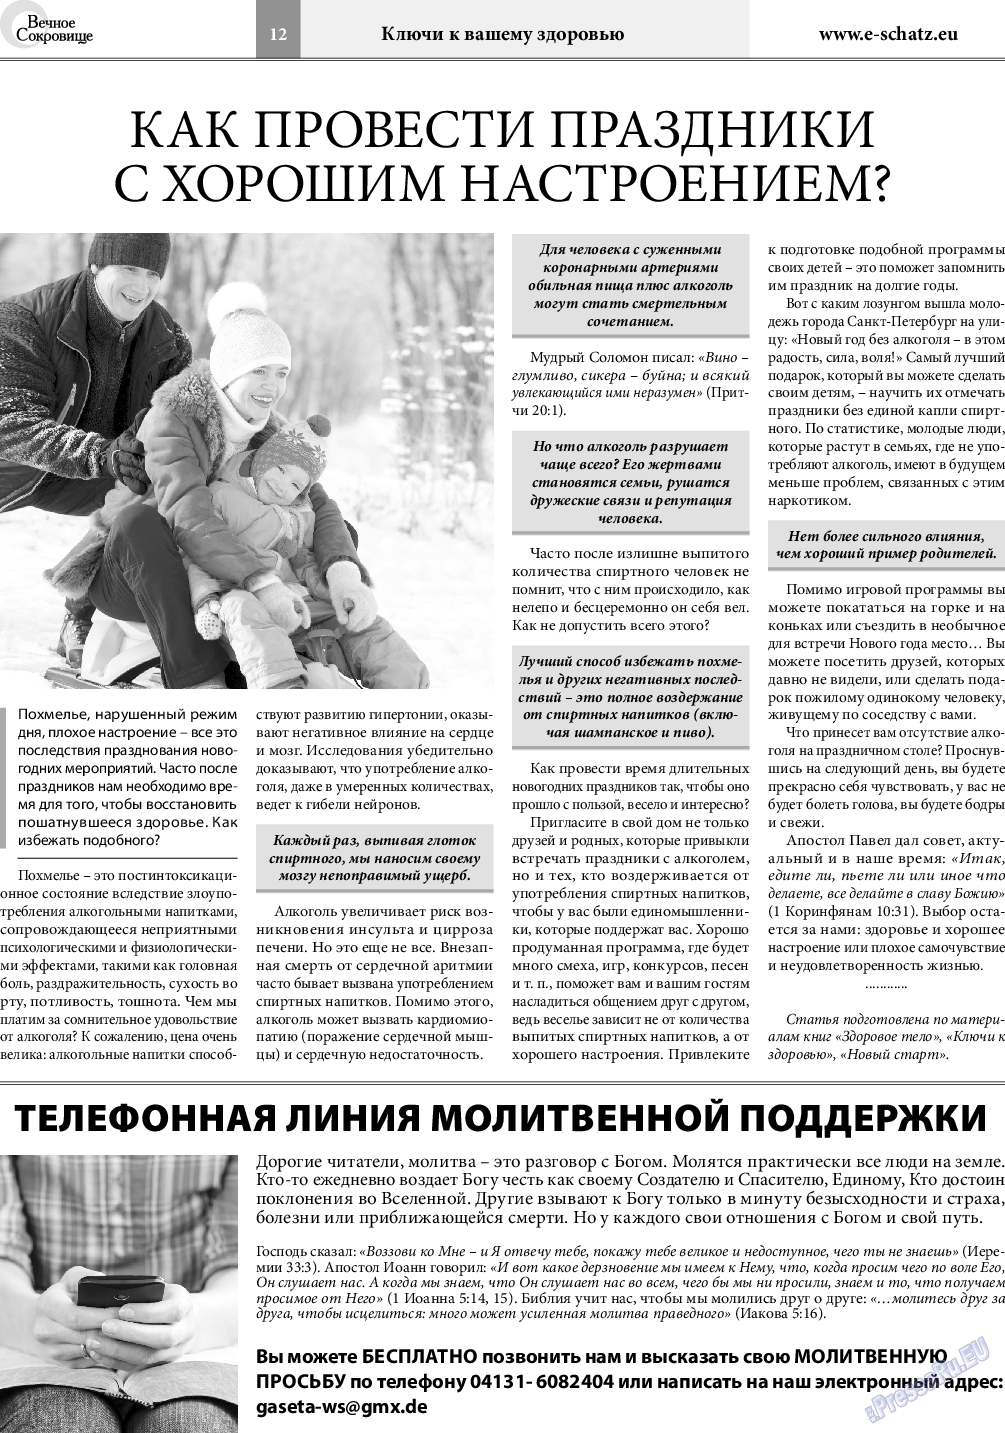 Вечное сокровище (газета). 2019 год, номер 6, стр. 12